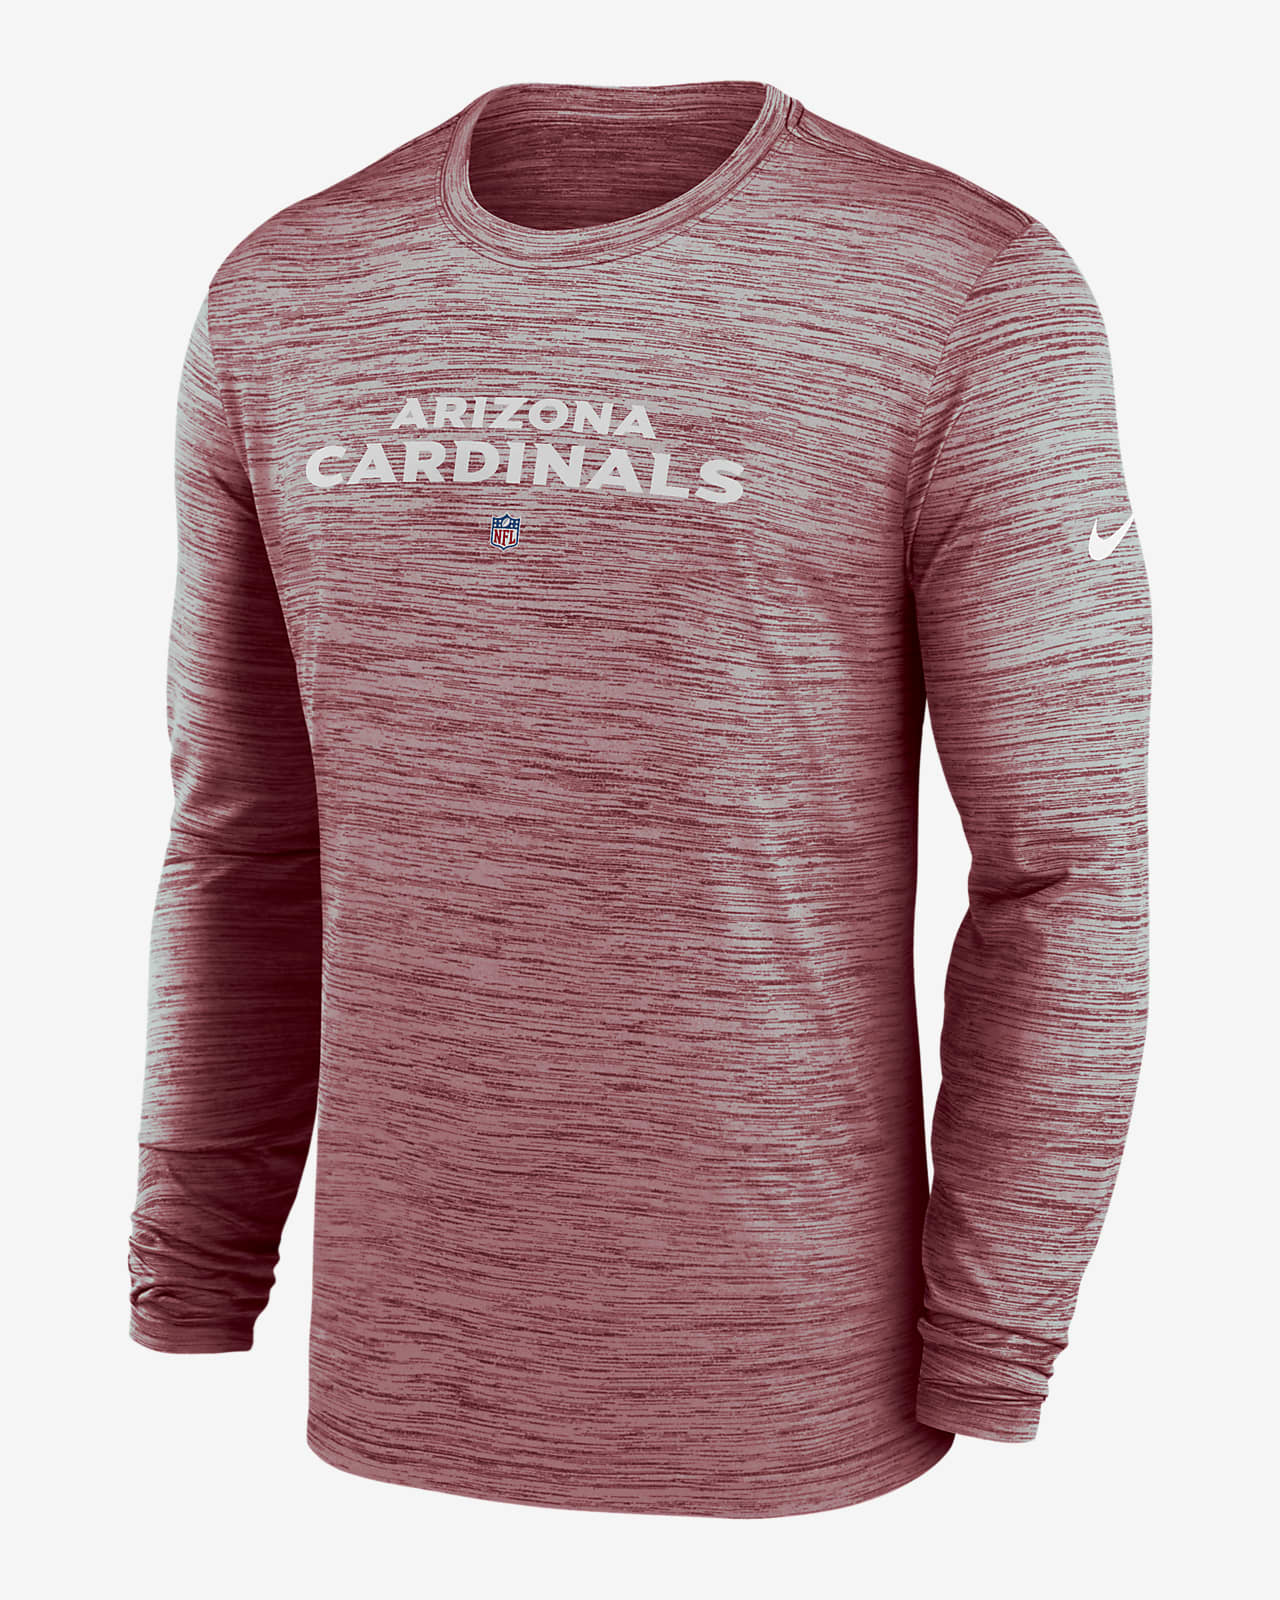 az cardinals tee shirts